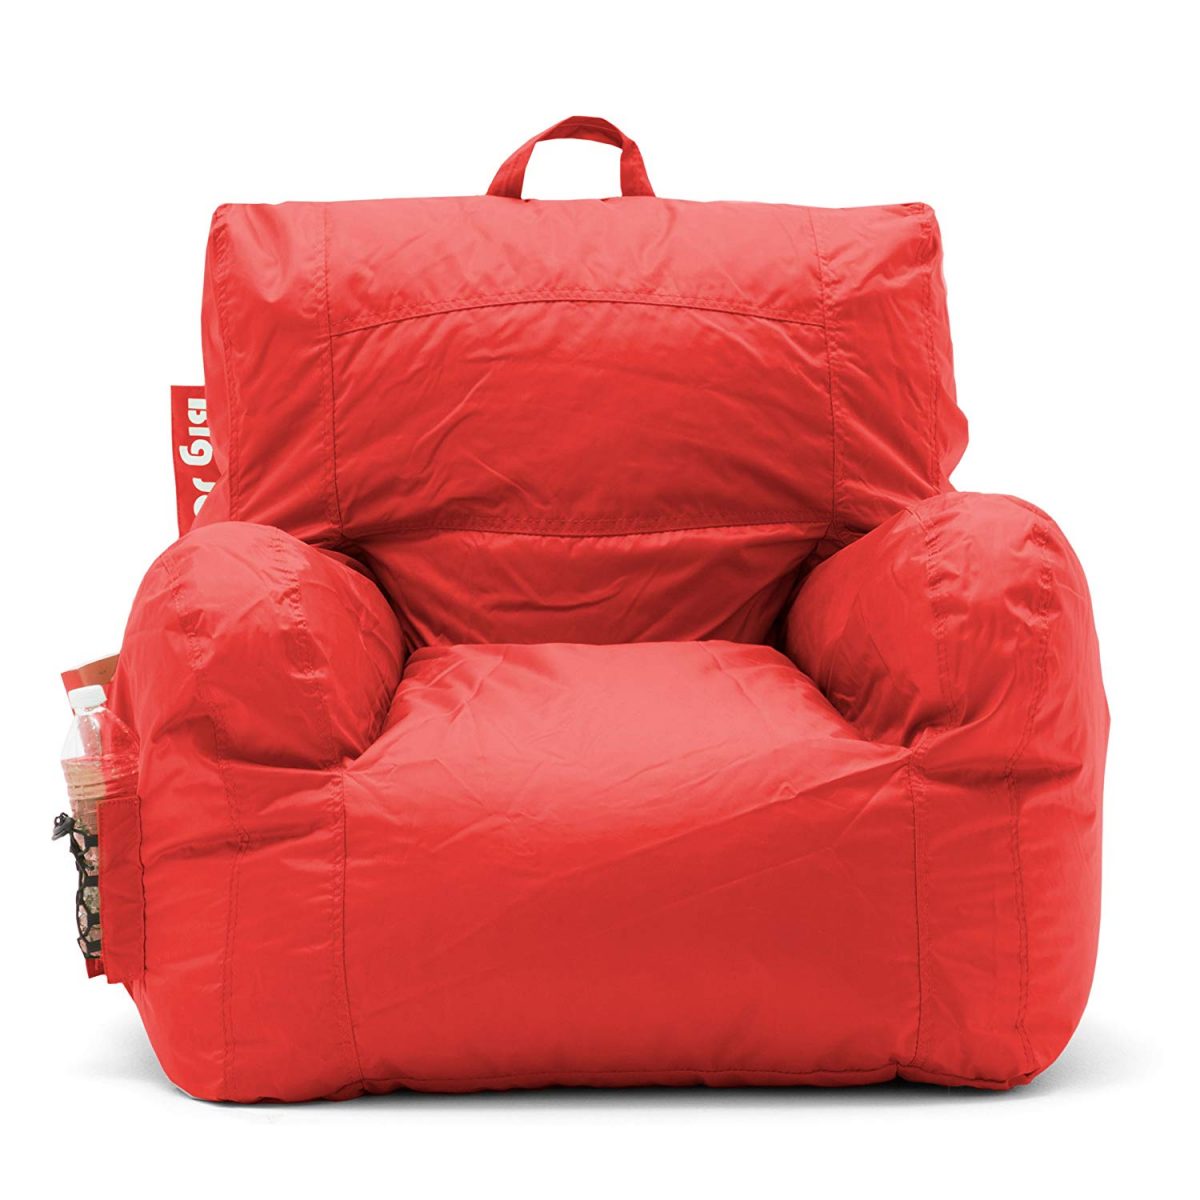 Dorm Bean Bag Chair 1200x1200 